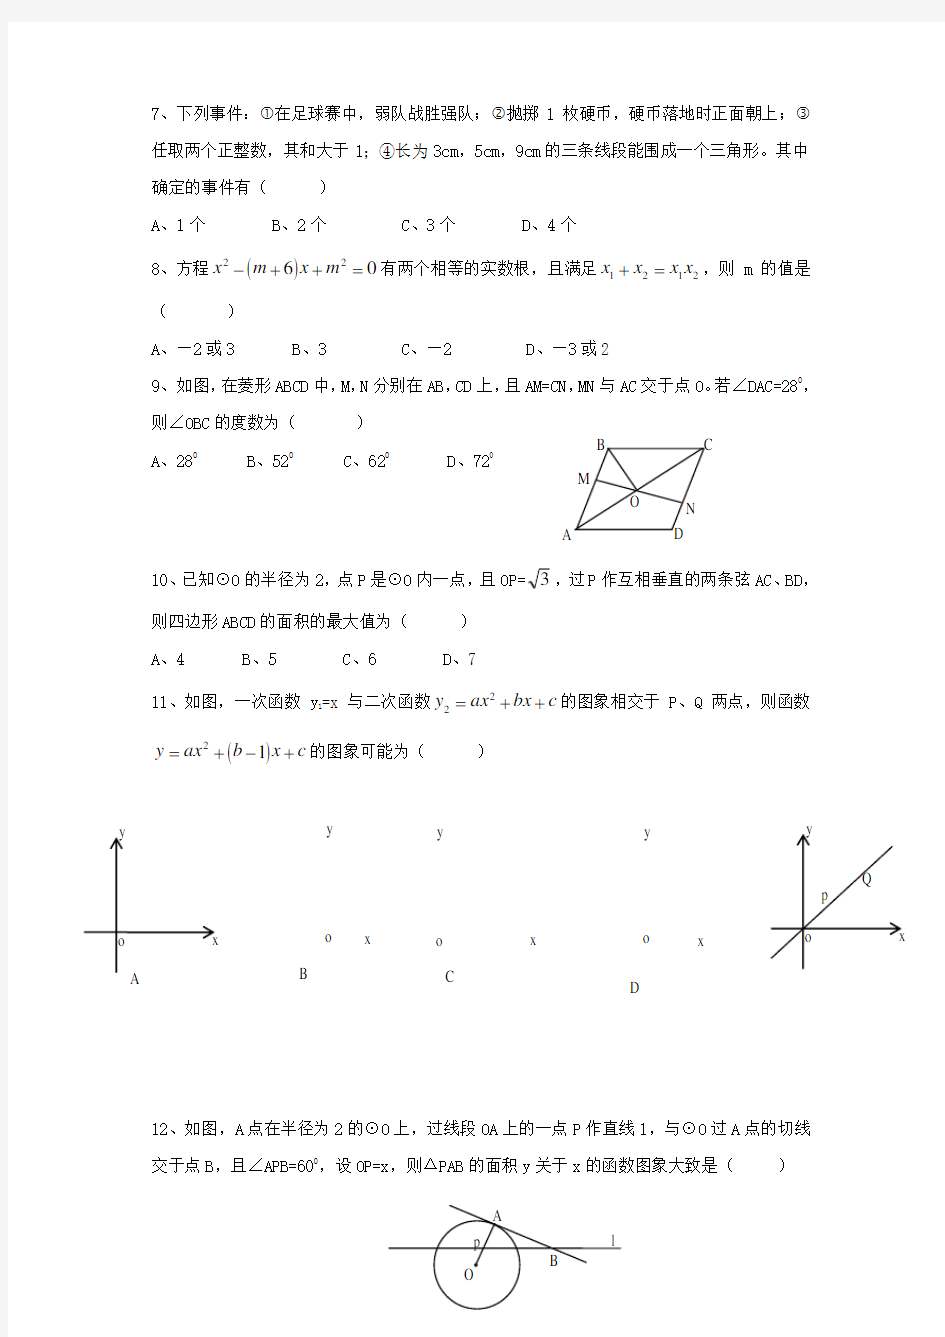 【2020年】山东省中考数学模拟试题(含答案)